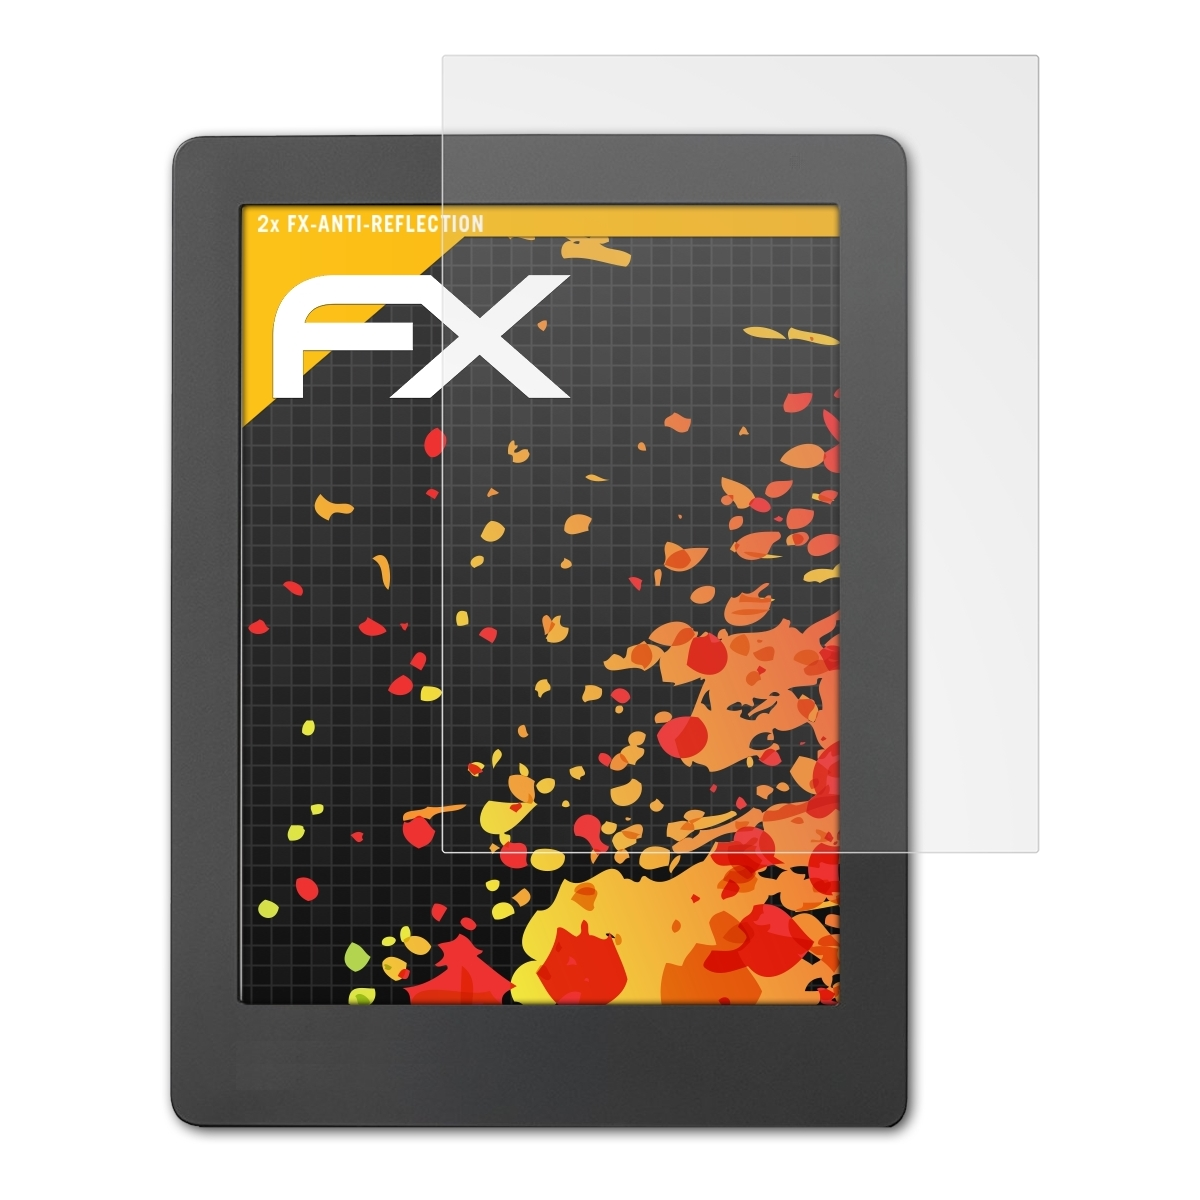 FX-Antireflex 2x ATFOLIX Displayschutz(für 2) Edition Kobo H2O Aura